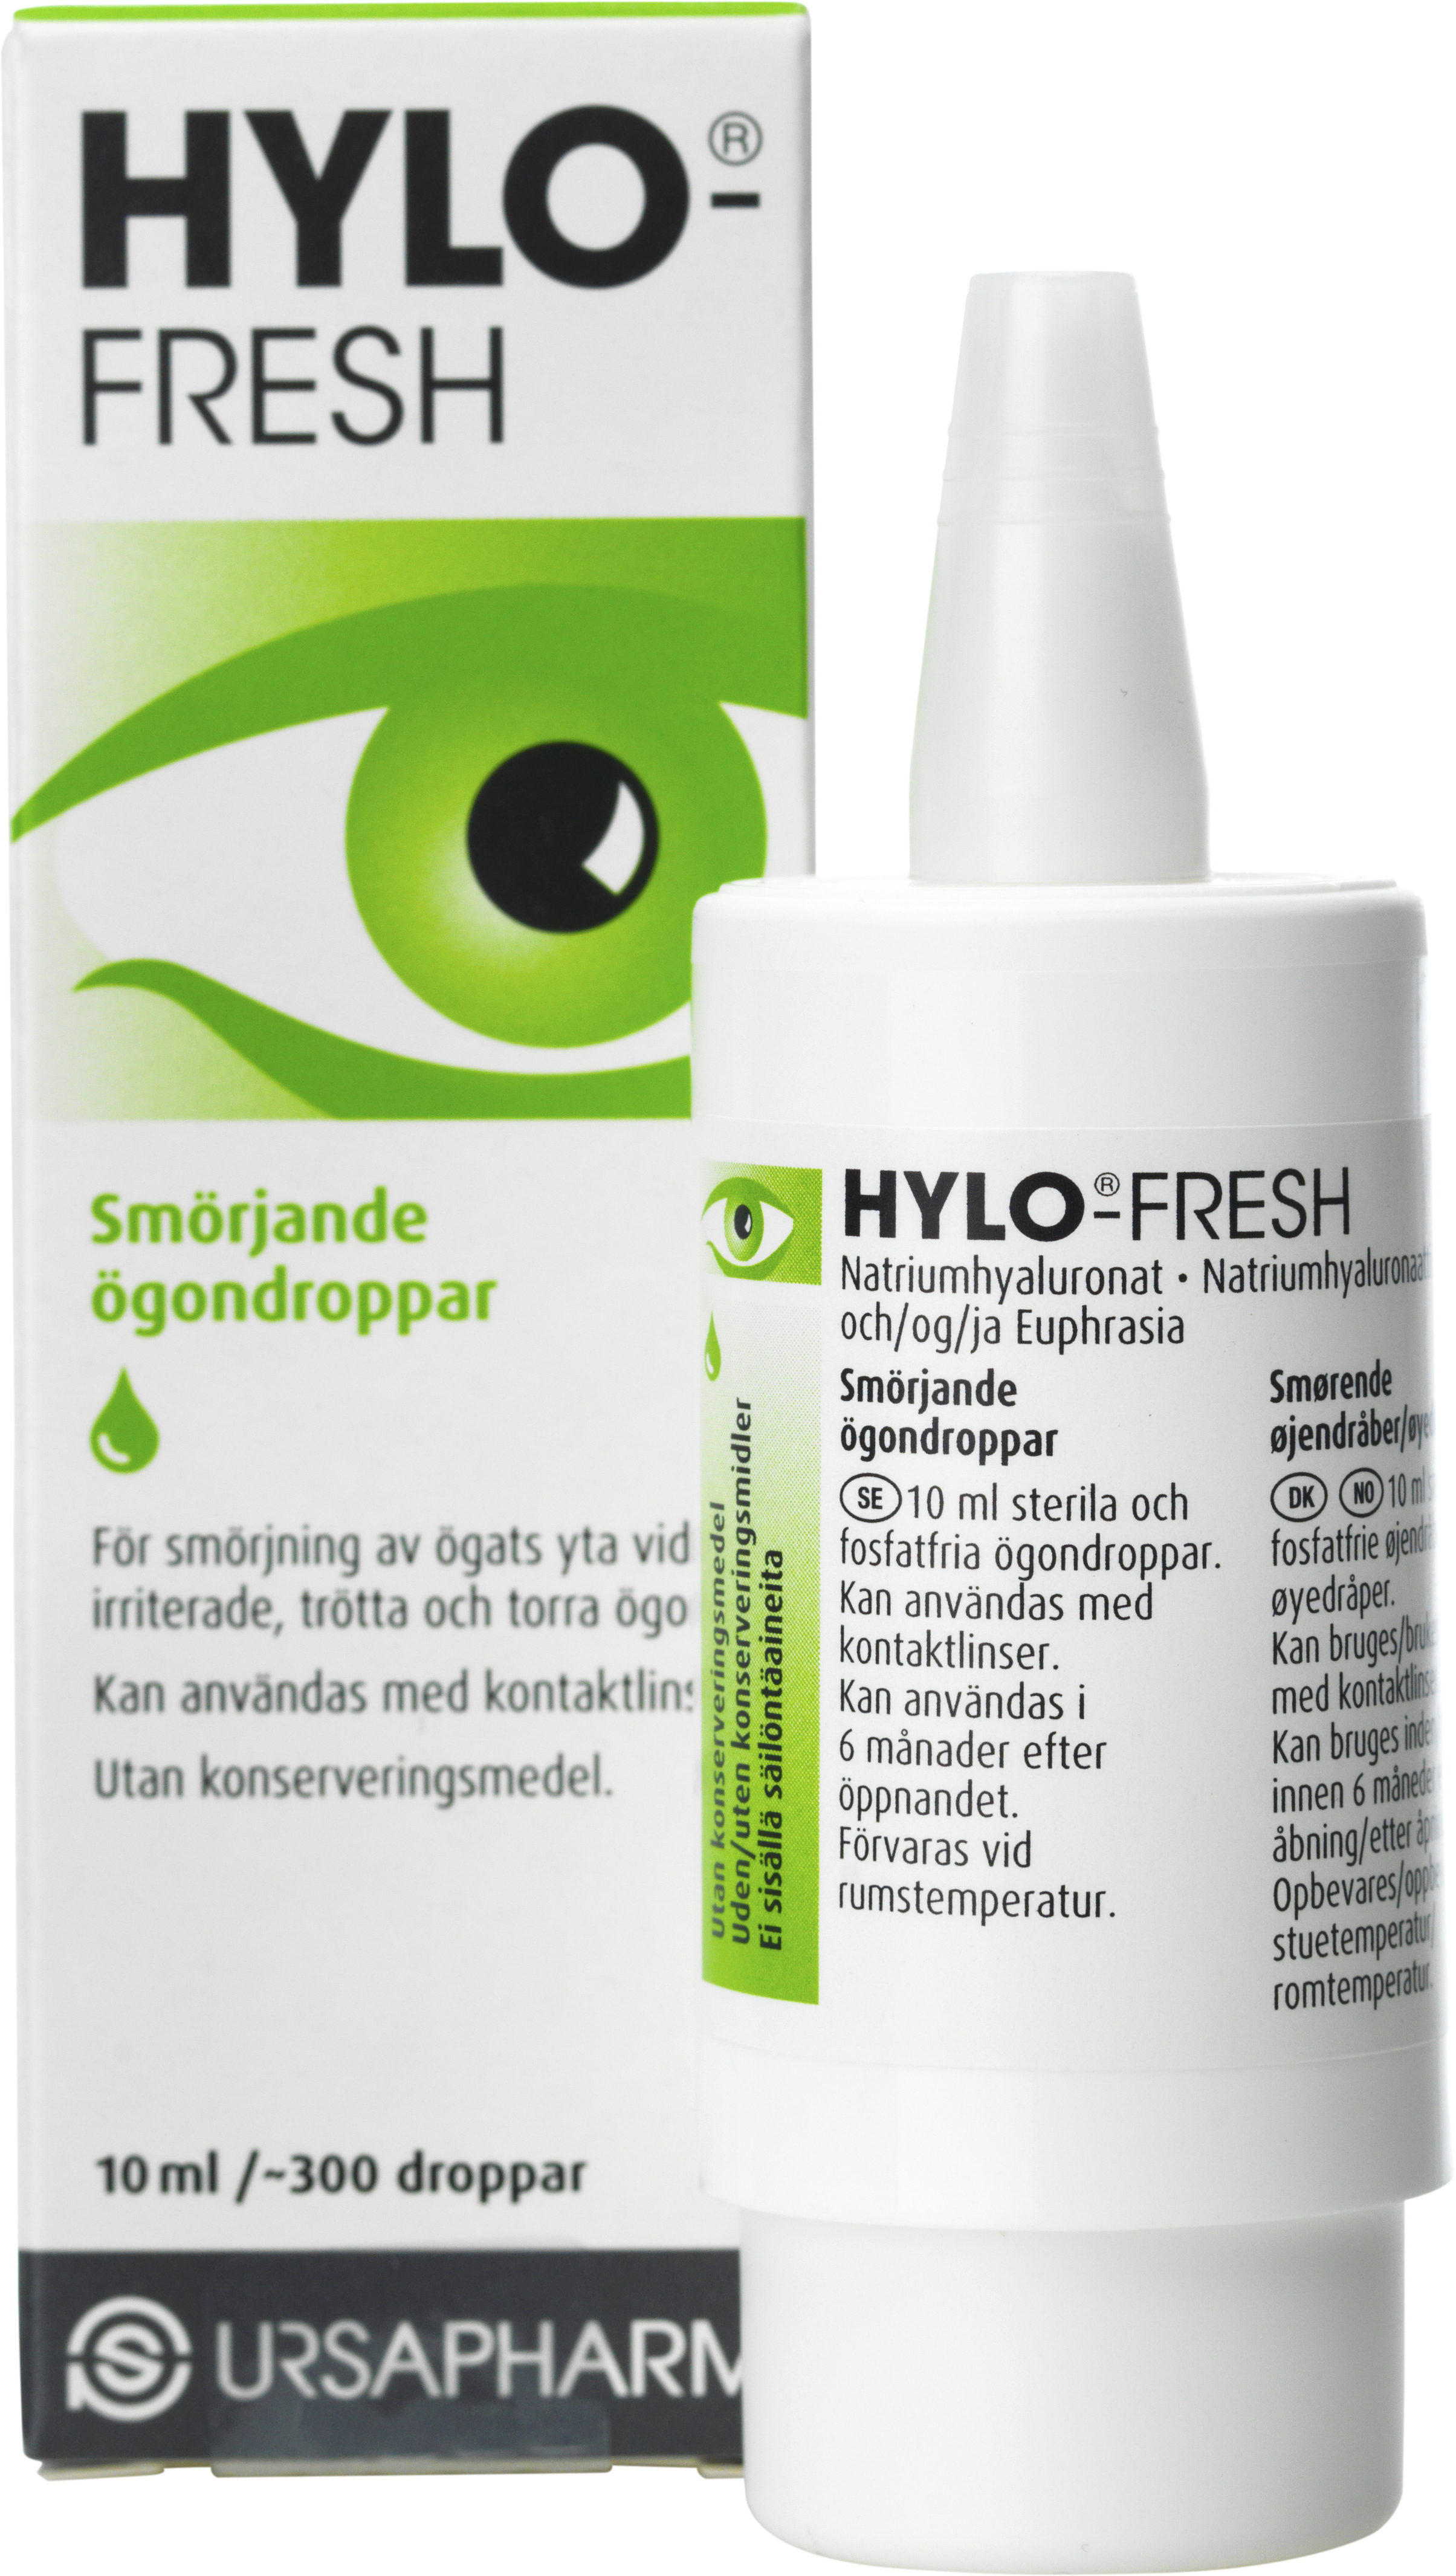 Hylo-Fresh Smörjande ögondroppar 10ml